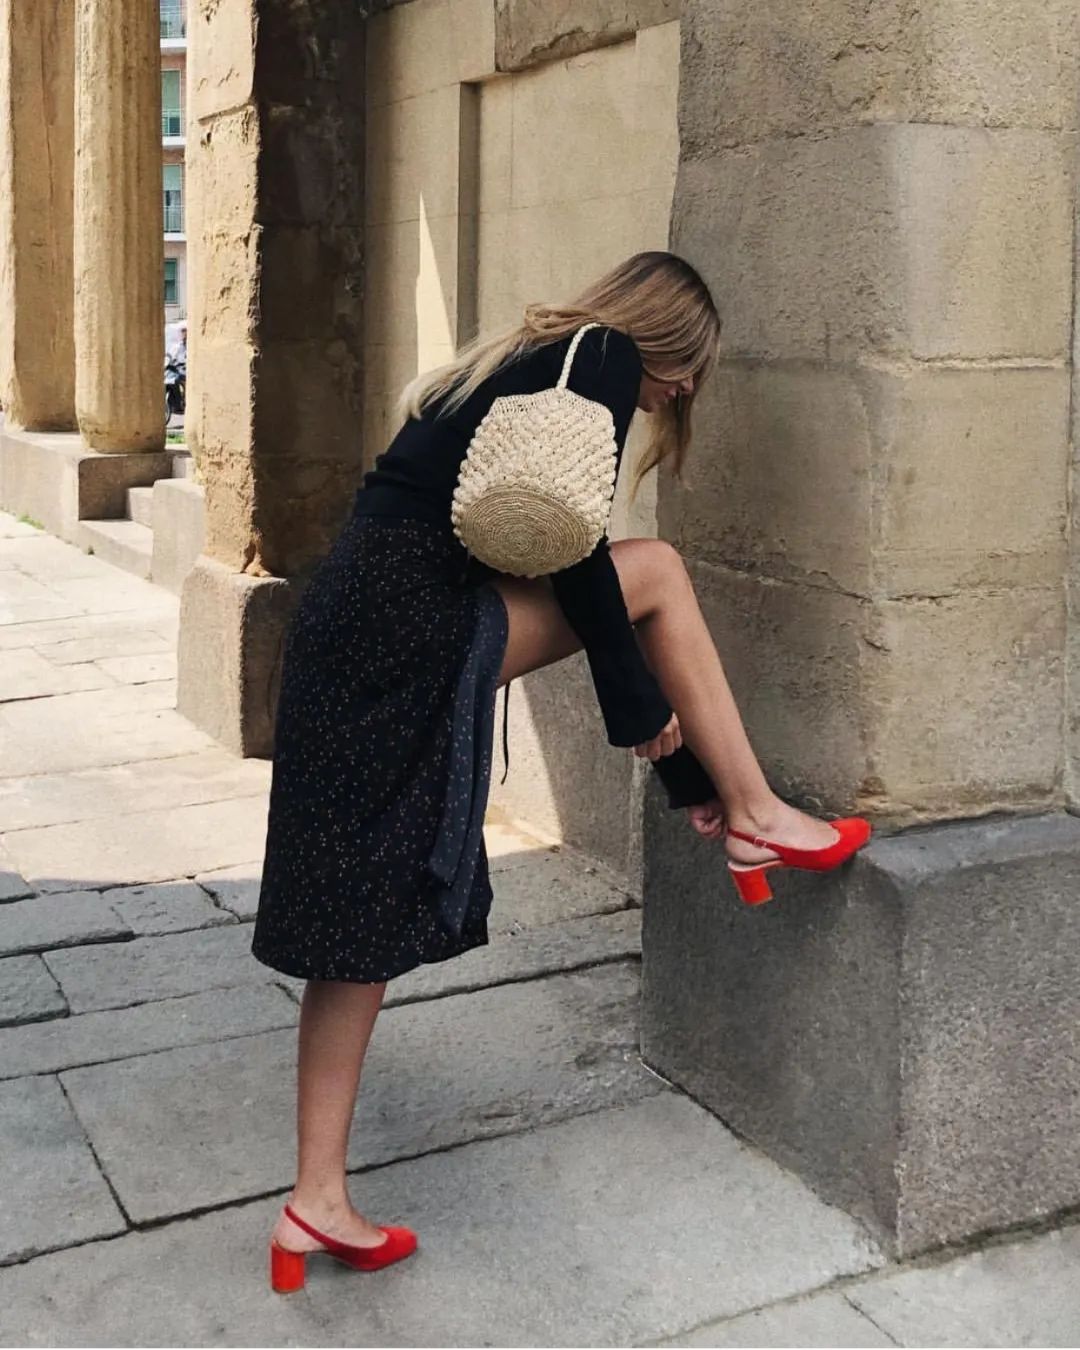 Đừng mãi quanh quẩn với giày đen/trắng nữa, giày đỏ mới thực sự giúp nâng tầm style và khiến bạn trông sang như gái Pháp - Ảnh 2.